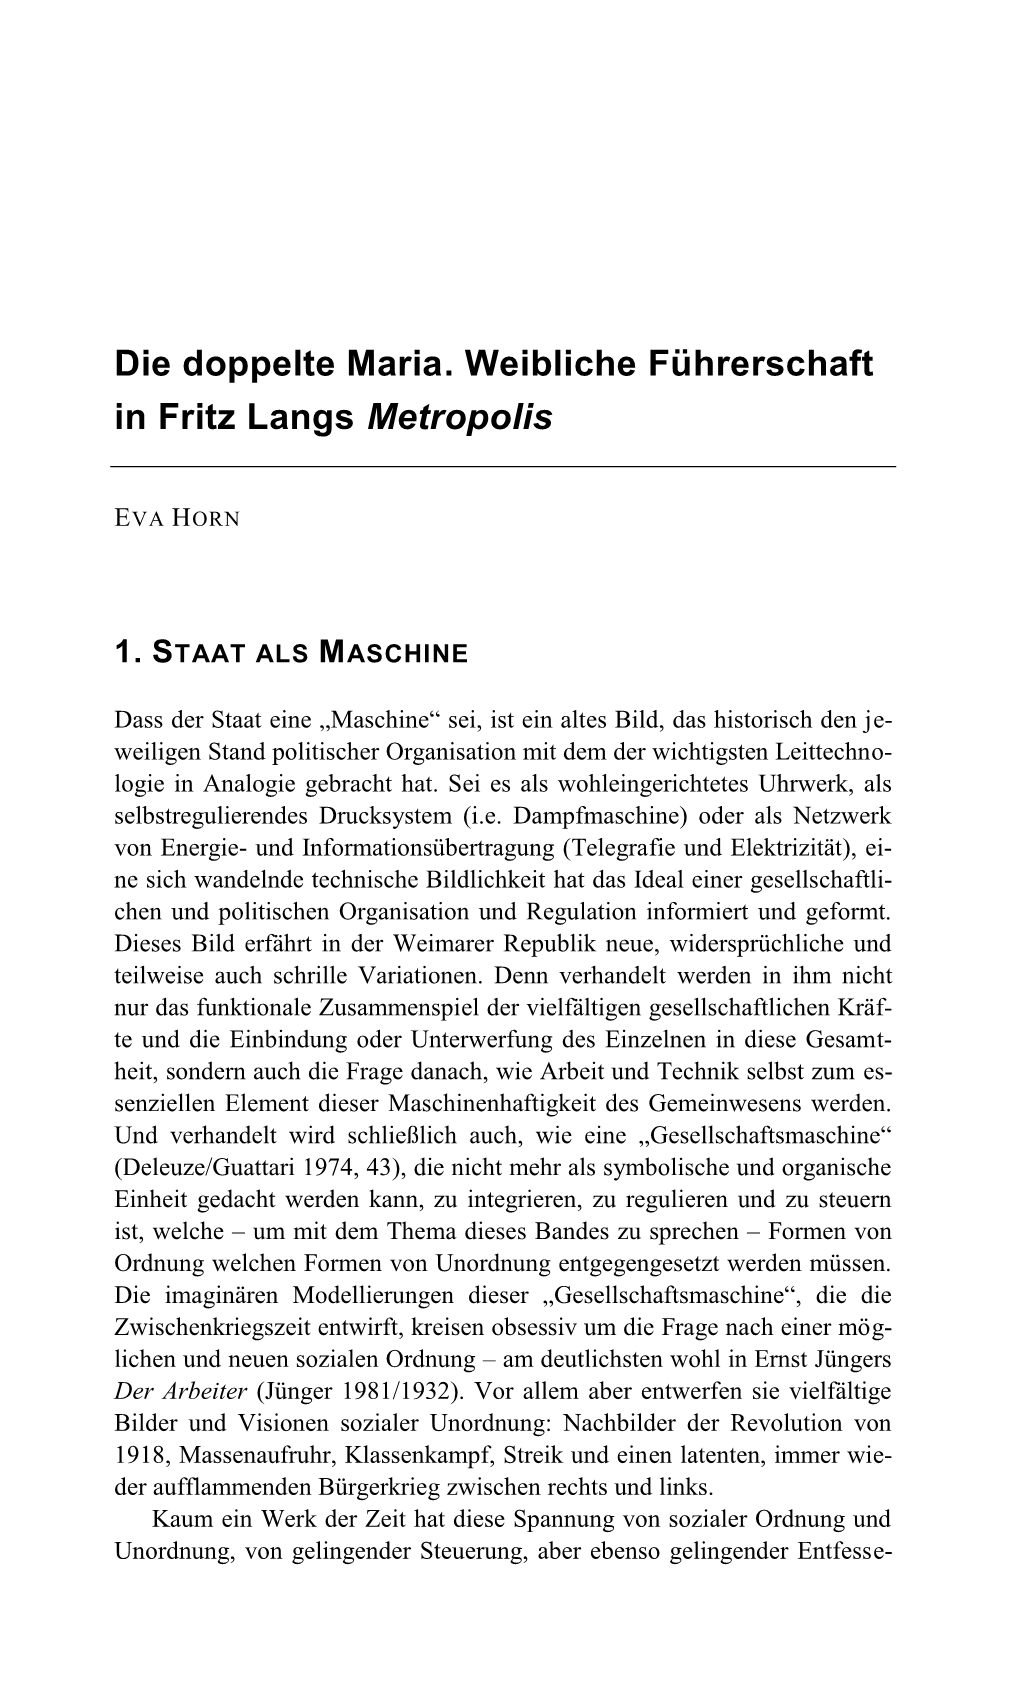 Die Doppelte Maria. Weibliche Führerschaft in Fritz Langs Metropolis